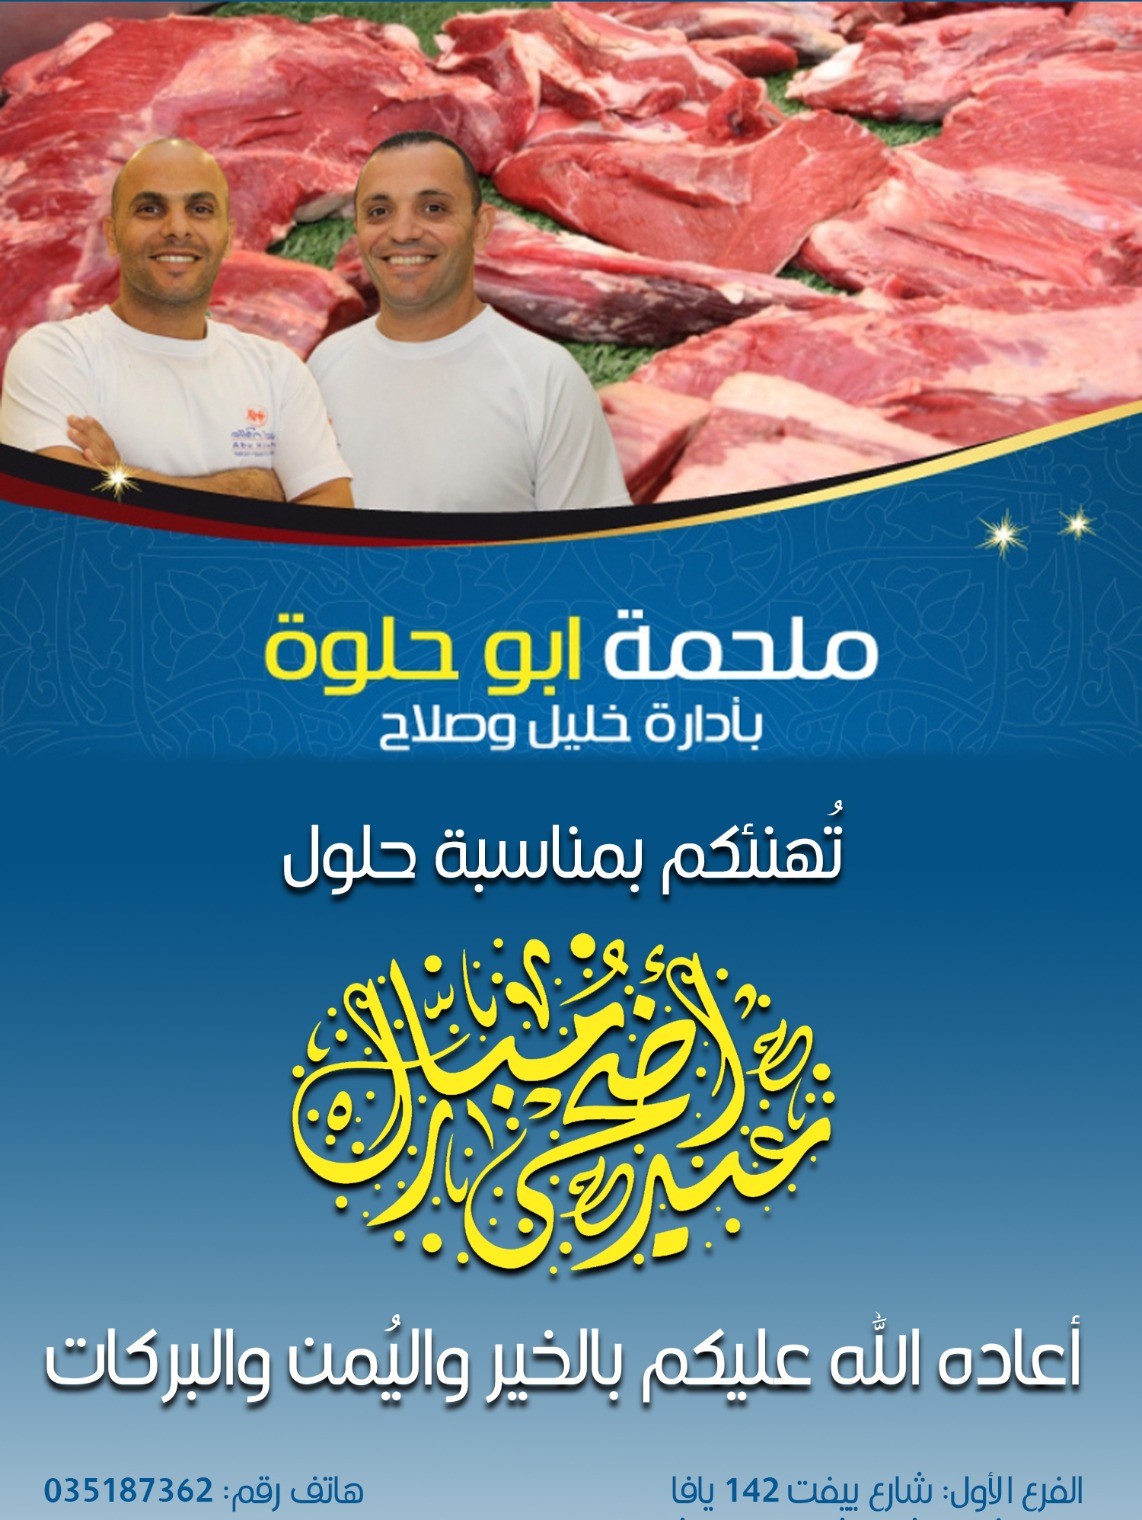 يافا: تهنئة من ملحمة اخوان أبو حلوة بمناسبة عيد الأضحى المبارك